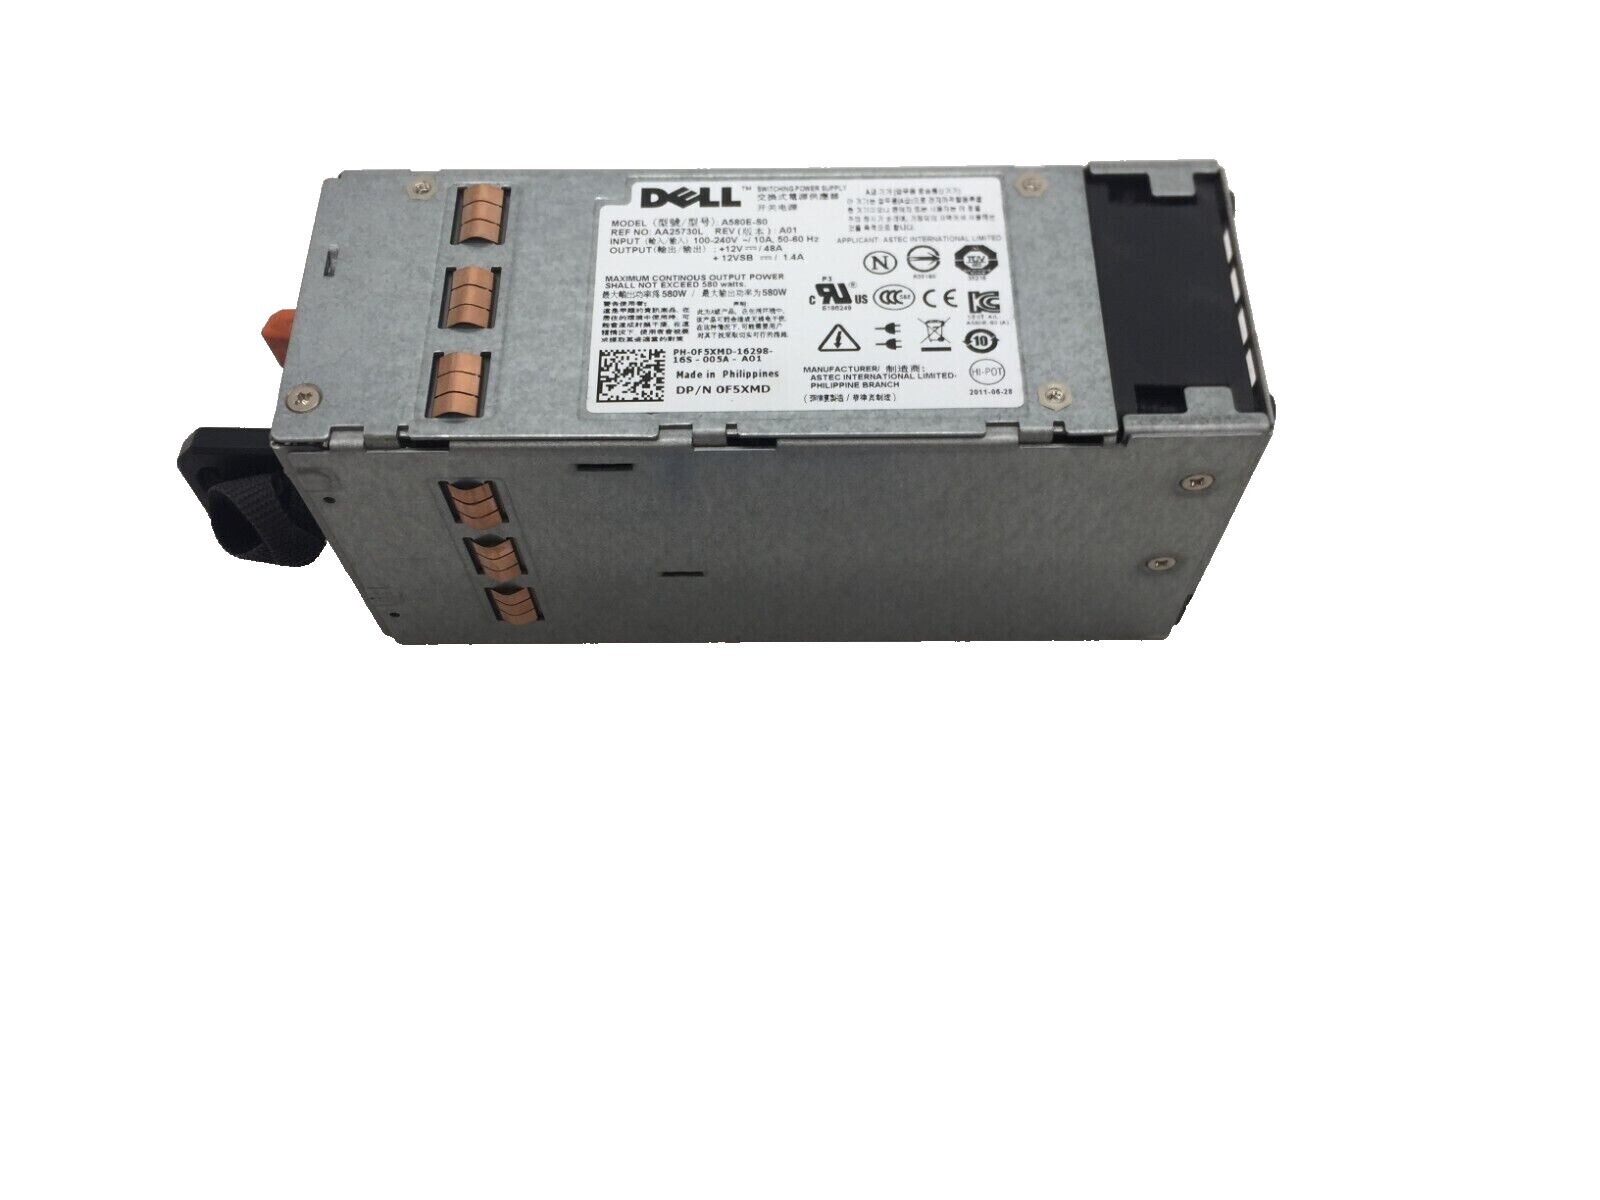 Dell A580E-S0 580w Redundant Power Supply PowerEdge T410 Server 0F5XMD PSU